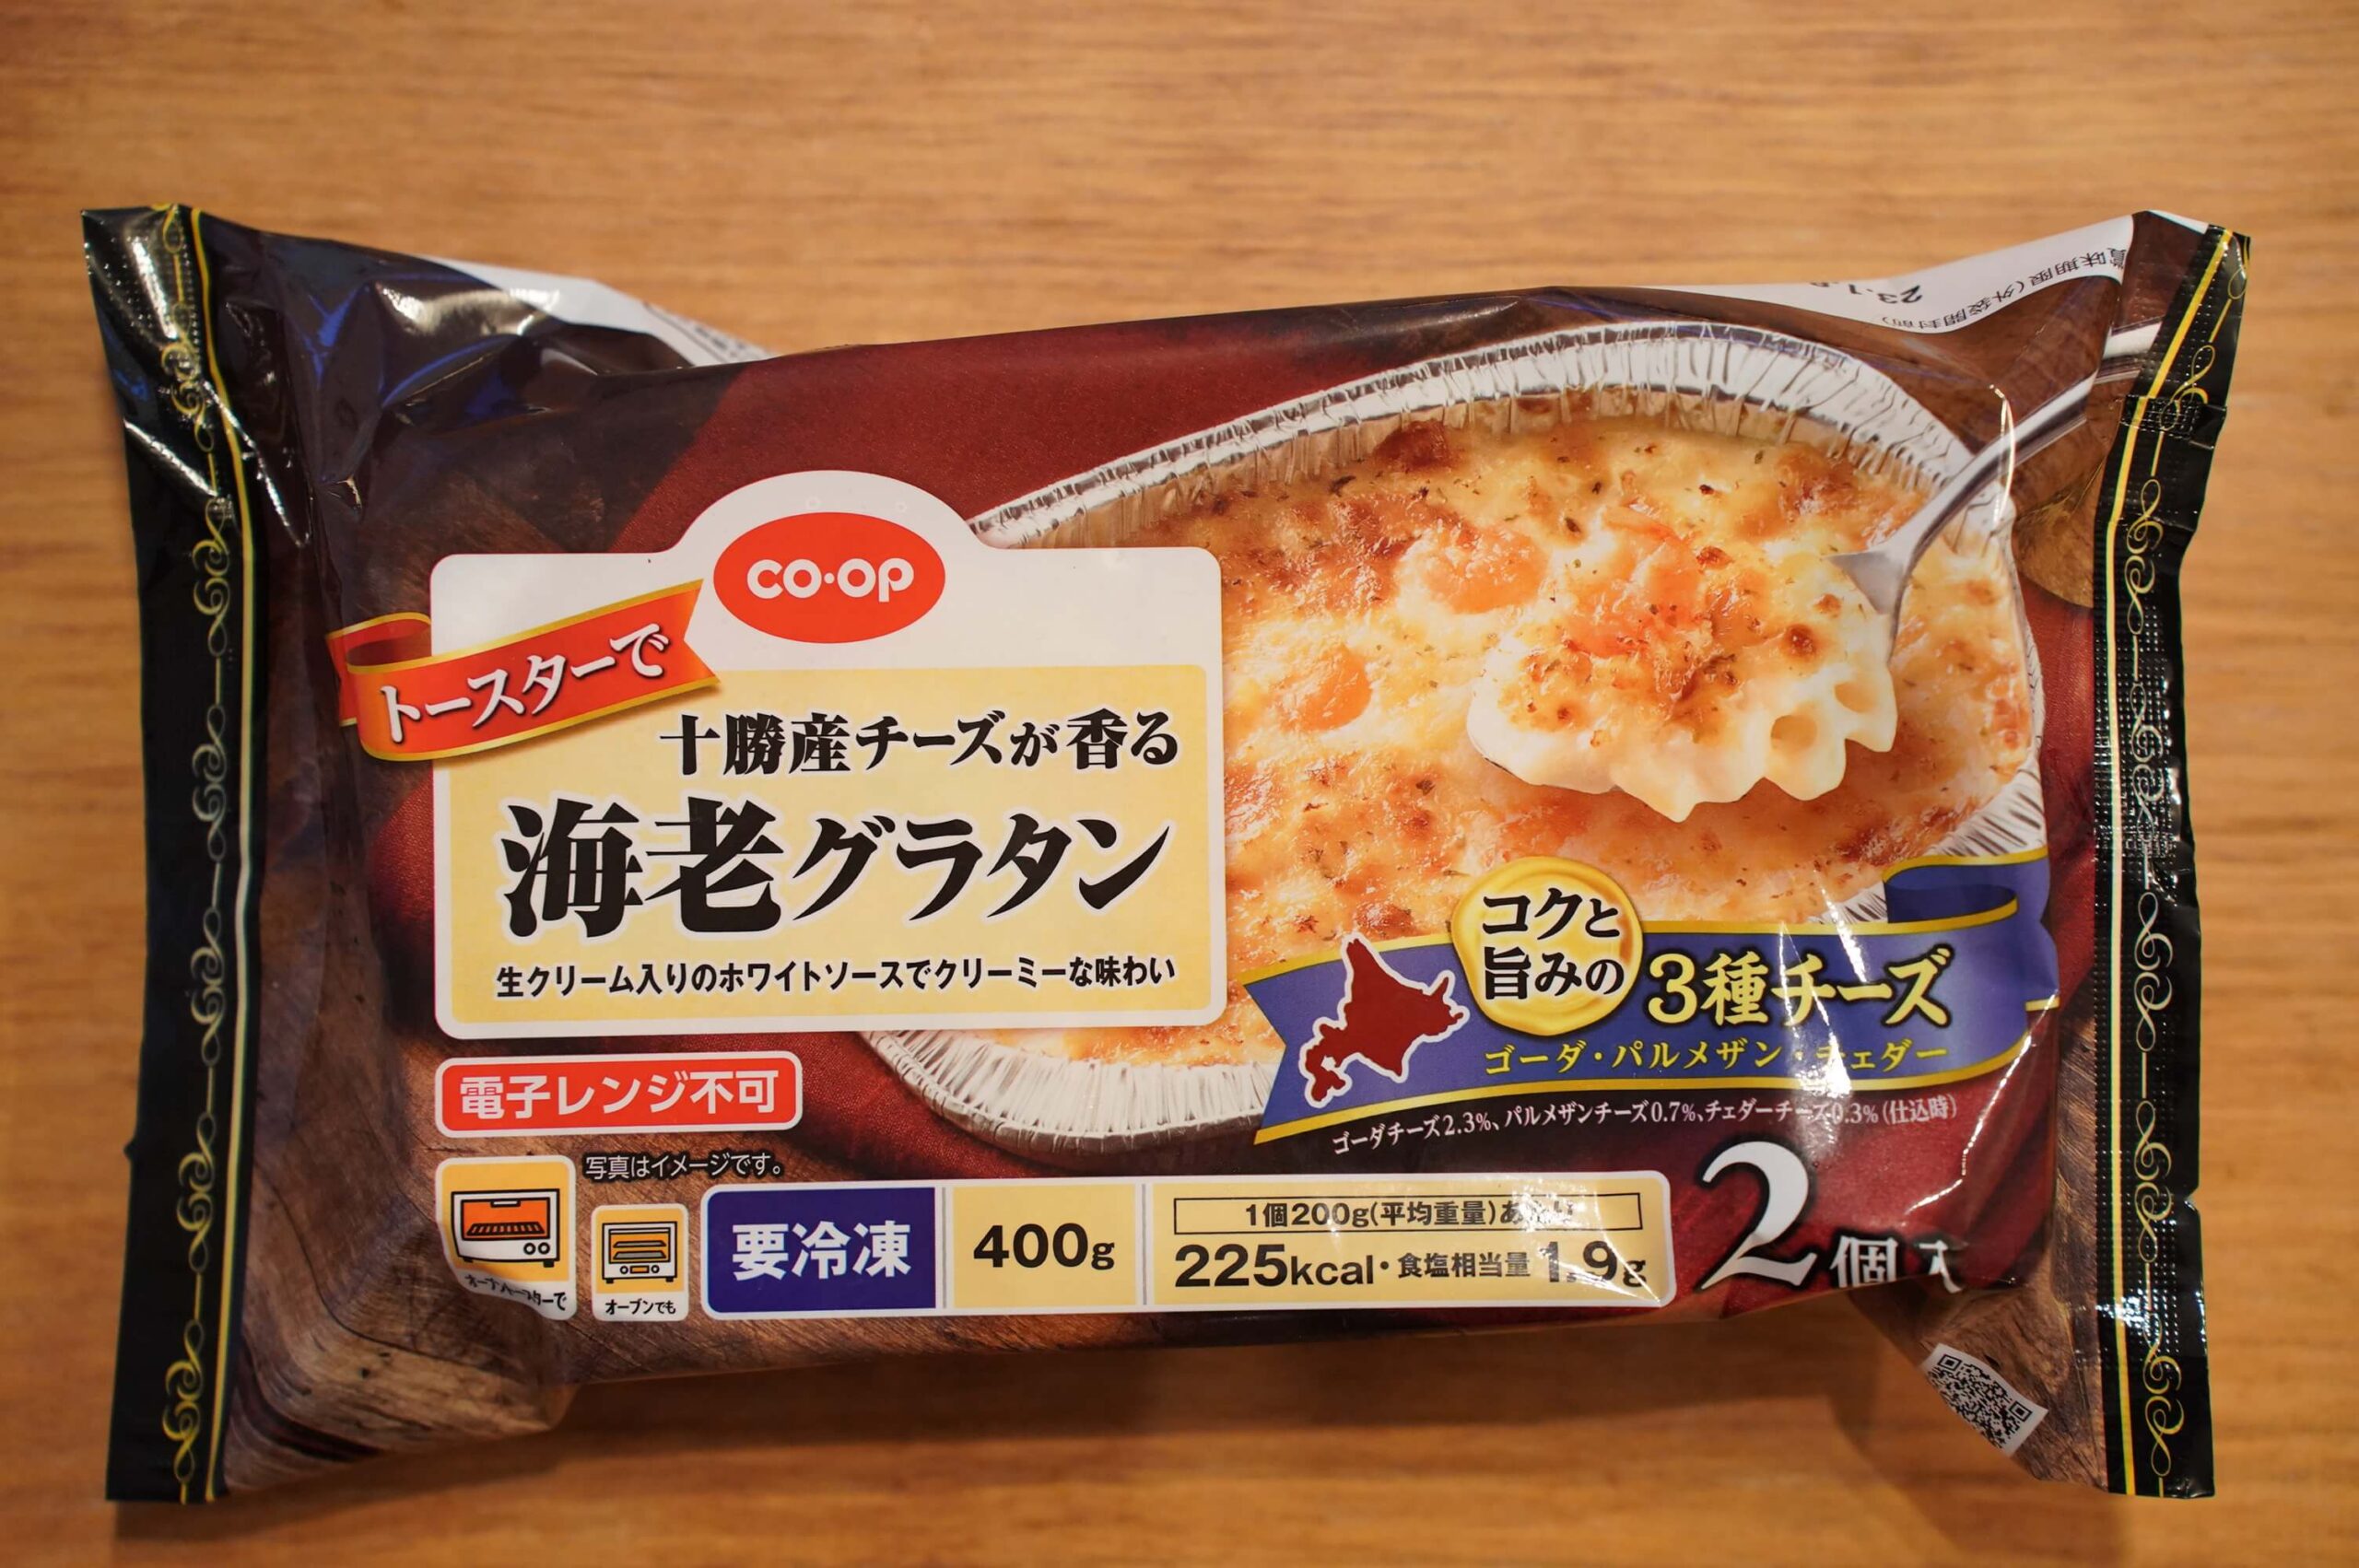 生協coop宅配の冷凍食品「十勝産チーズが香る海老グラタン」のパッケージ写真